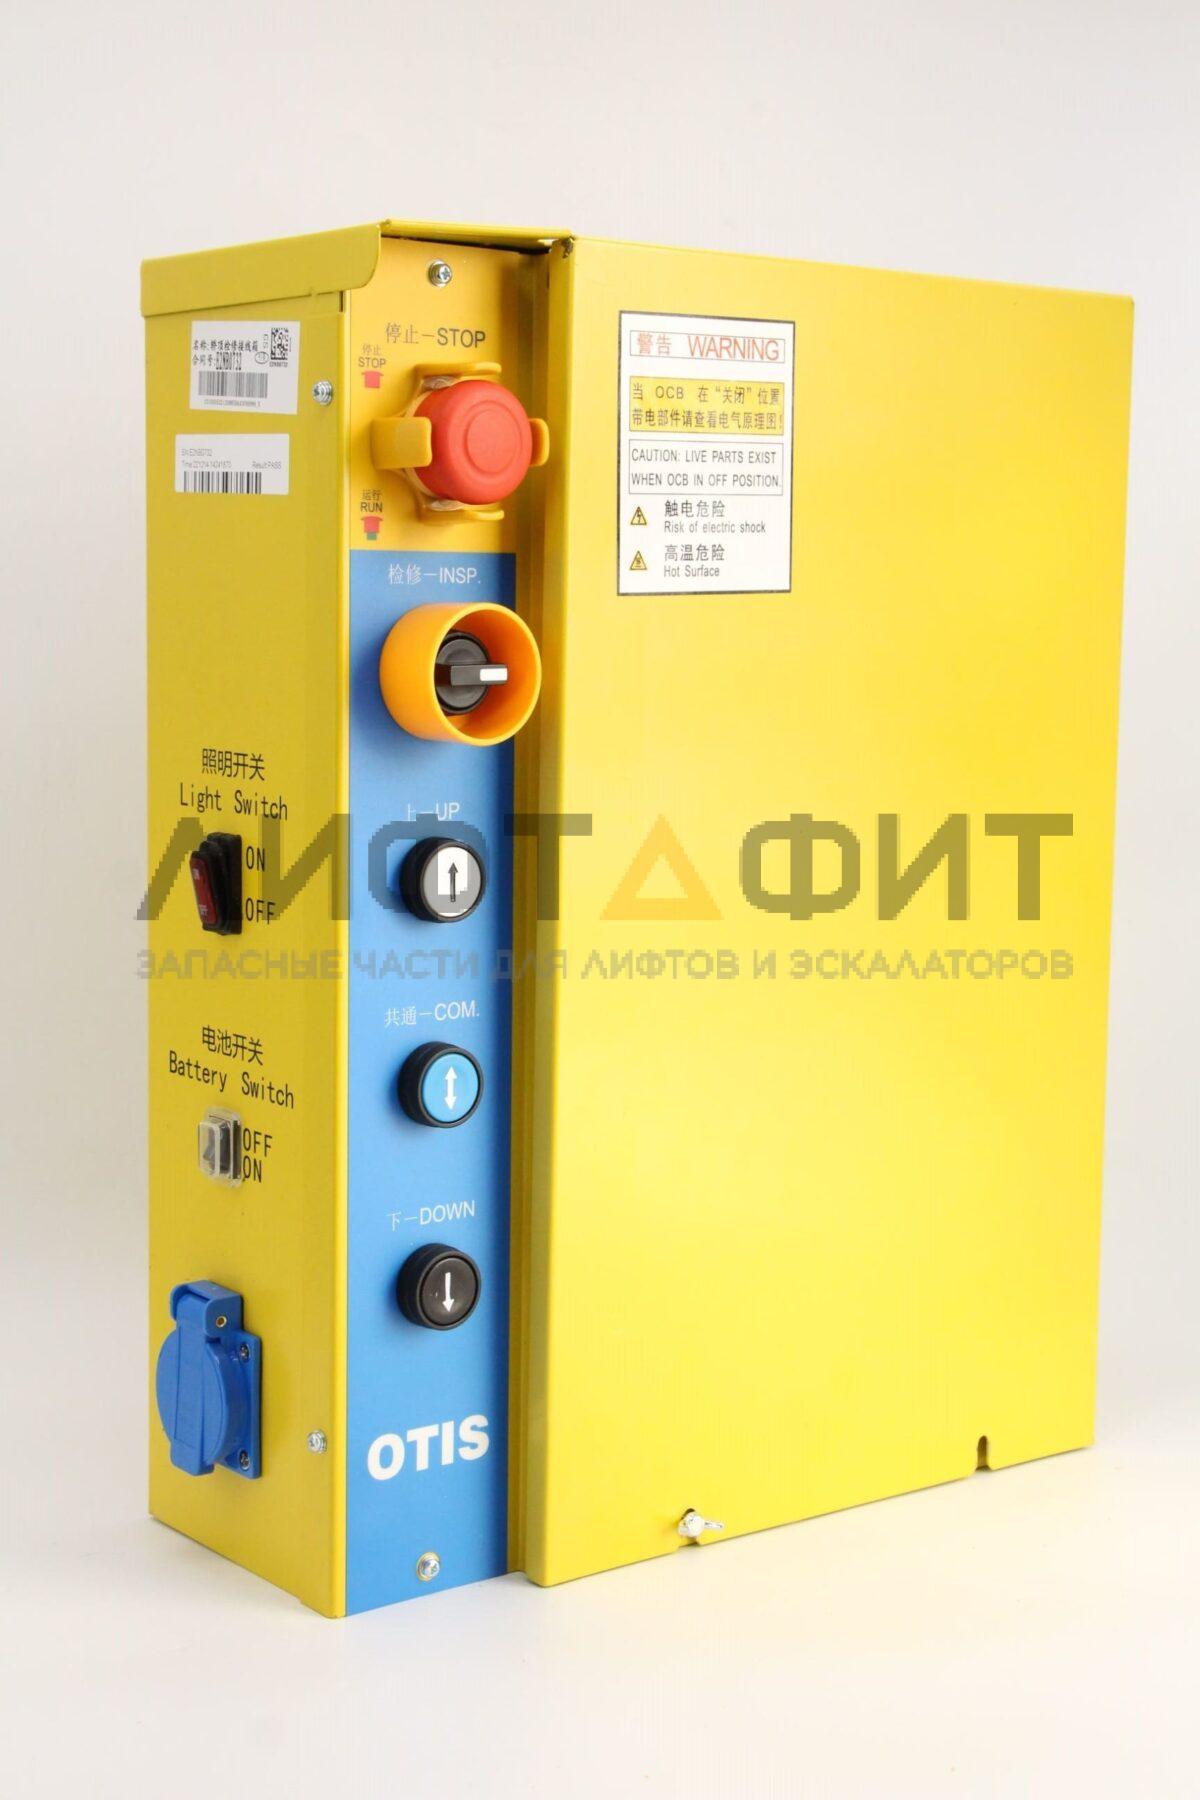 Блок управления J-Box на кабине лифта, HAA309H989, Otis